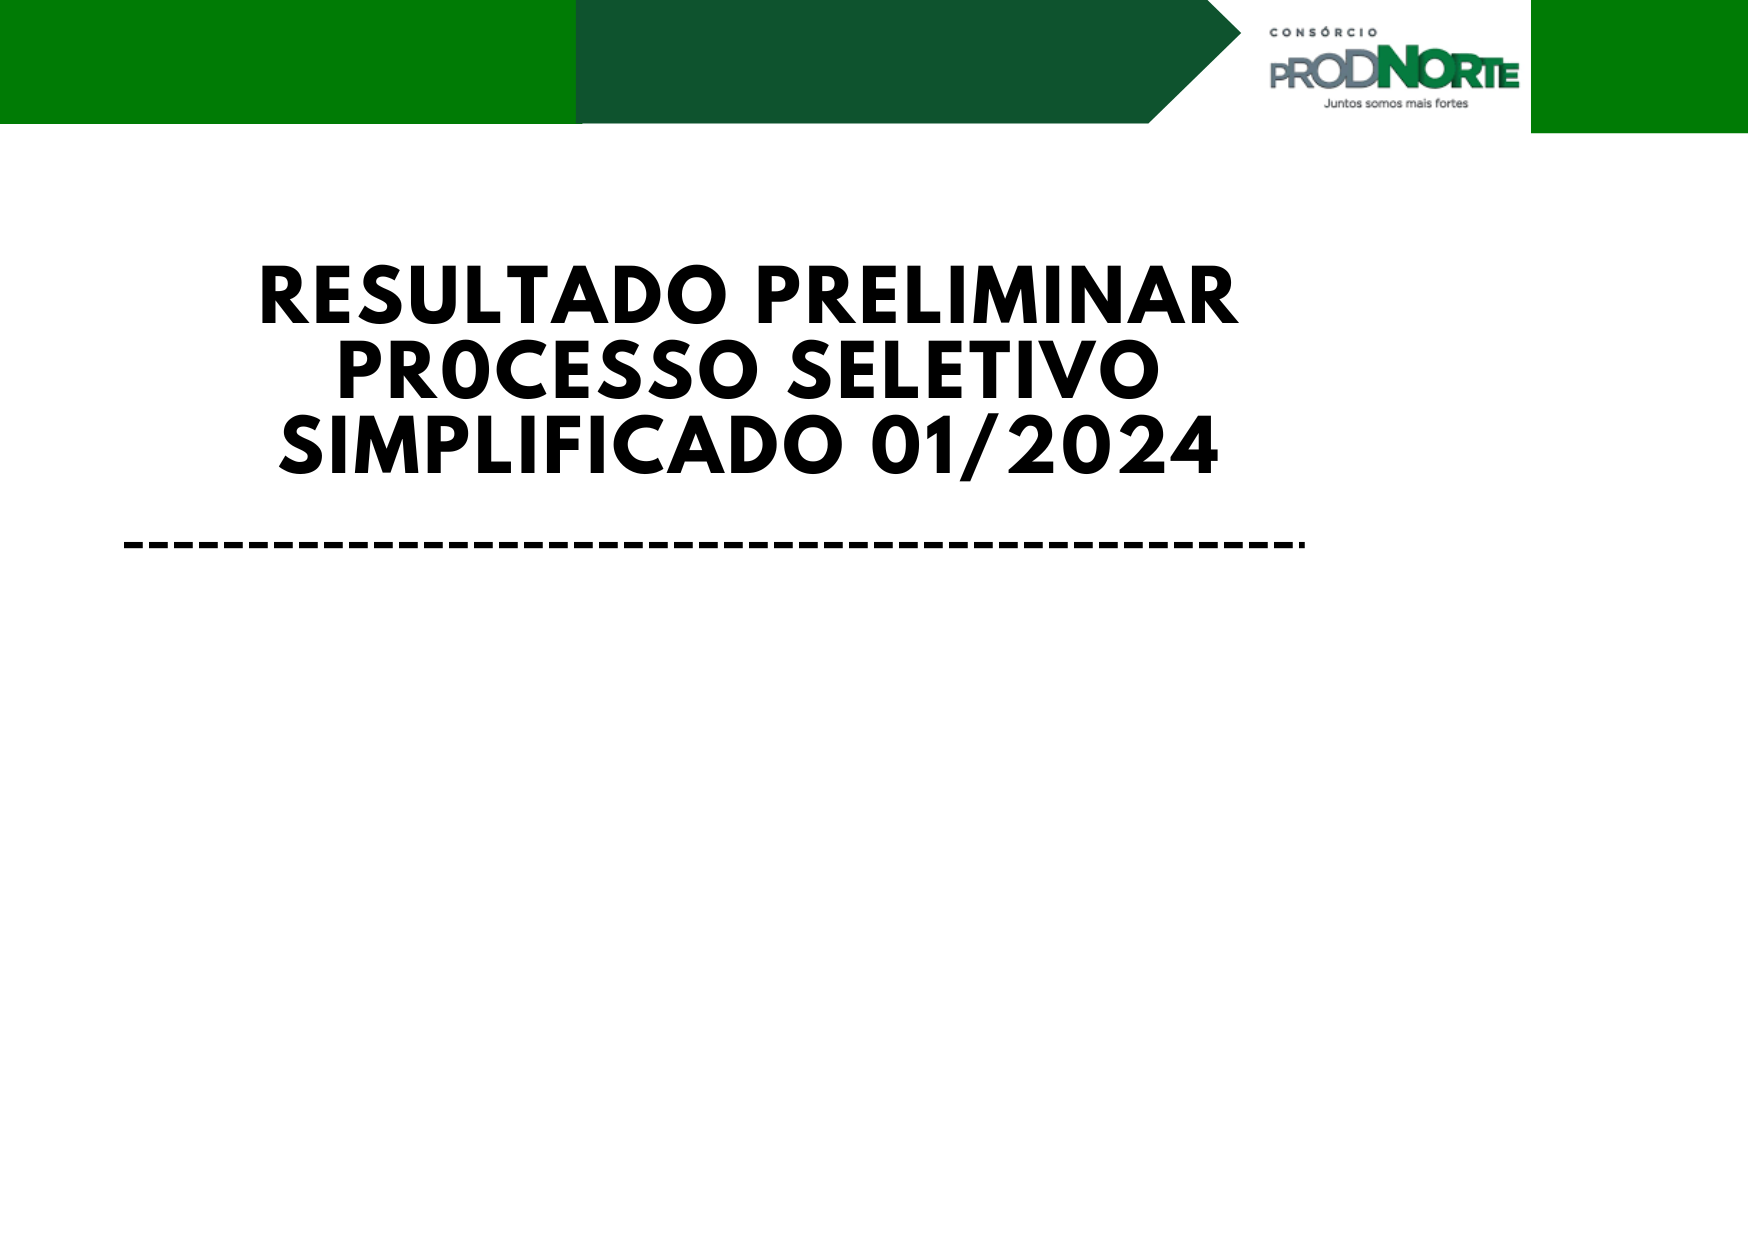 RESULTADO PRELIMINAR PROCESSO SELETIVO 01/2024